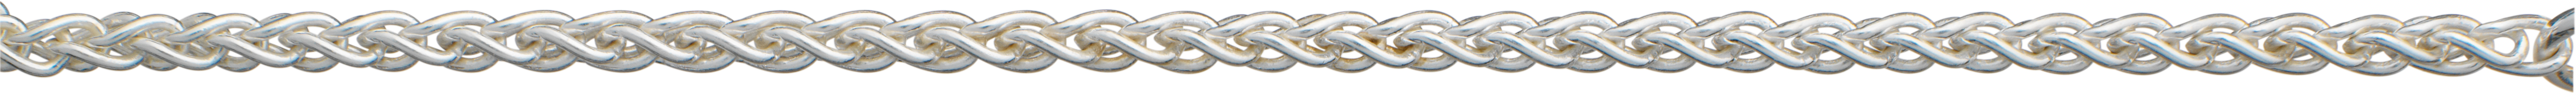 Braid chain silver 925/- Ø 2,50mm